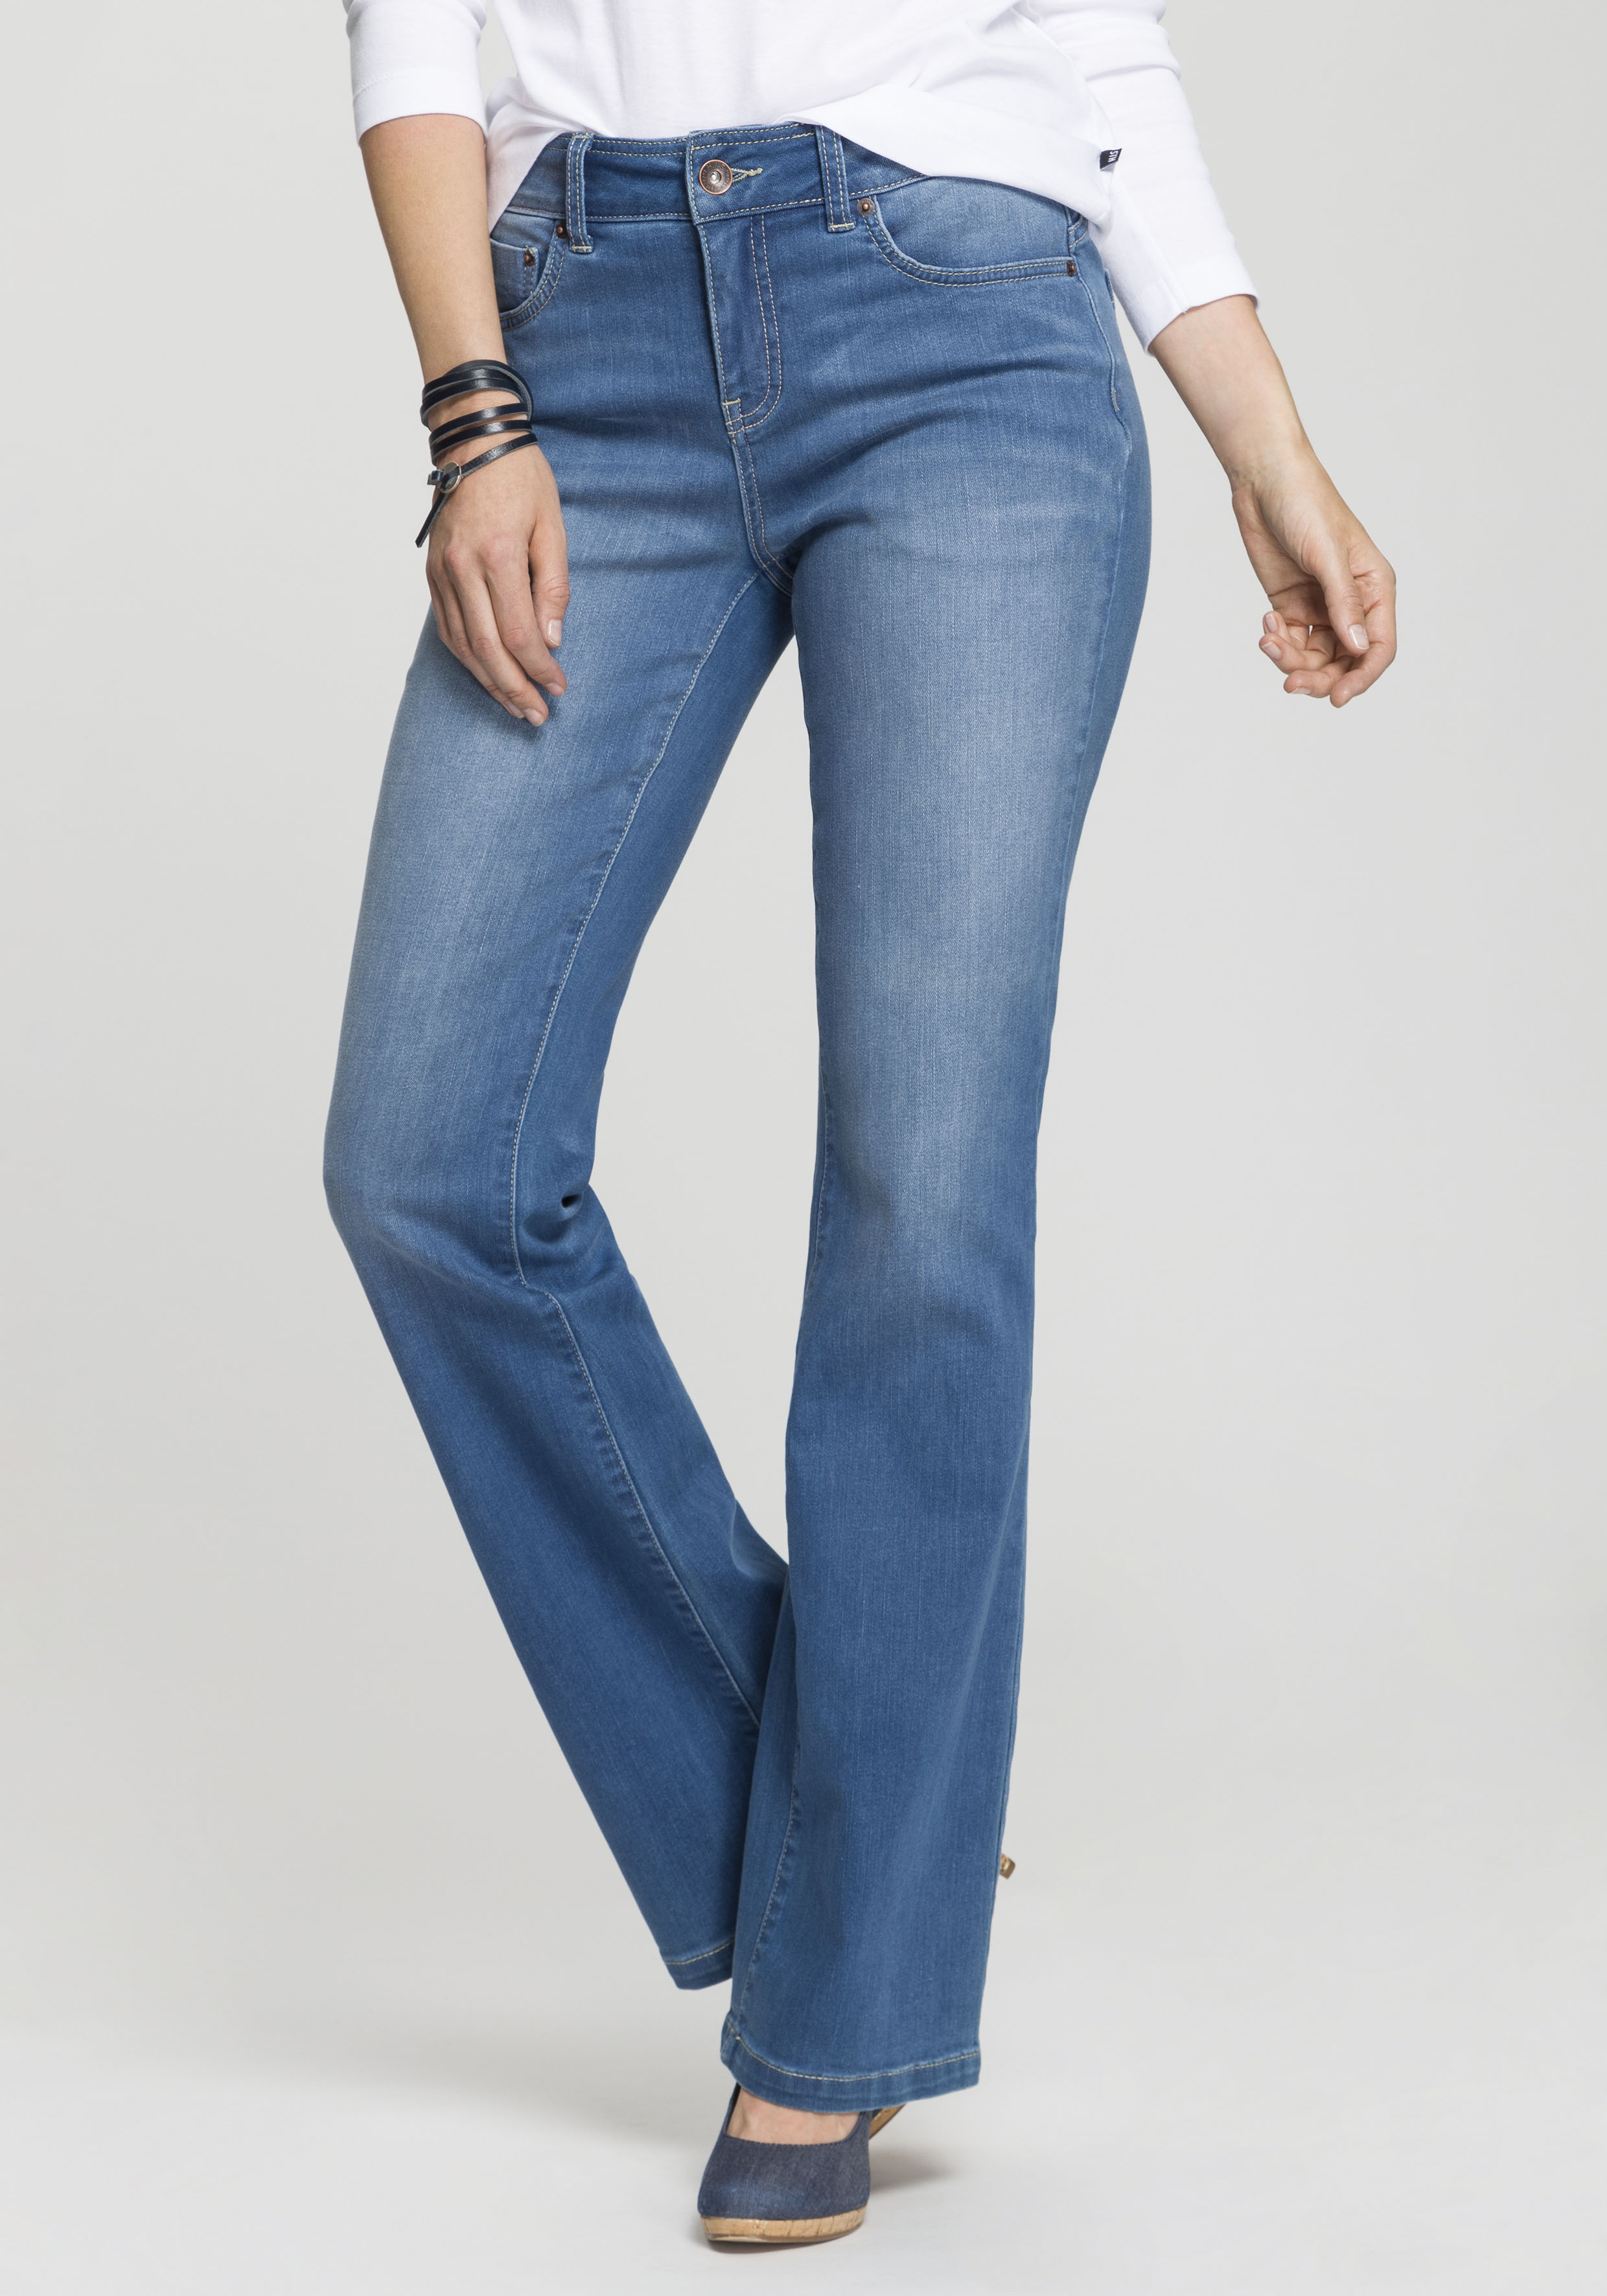 H.I.S Bootcut-Jeans "High-Waist", wassersparende Produktion durch OZON WASH